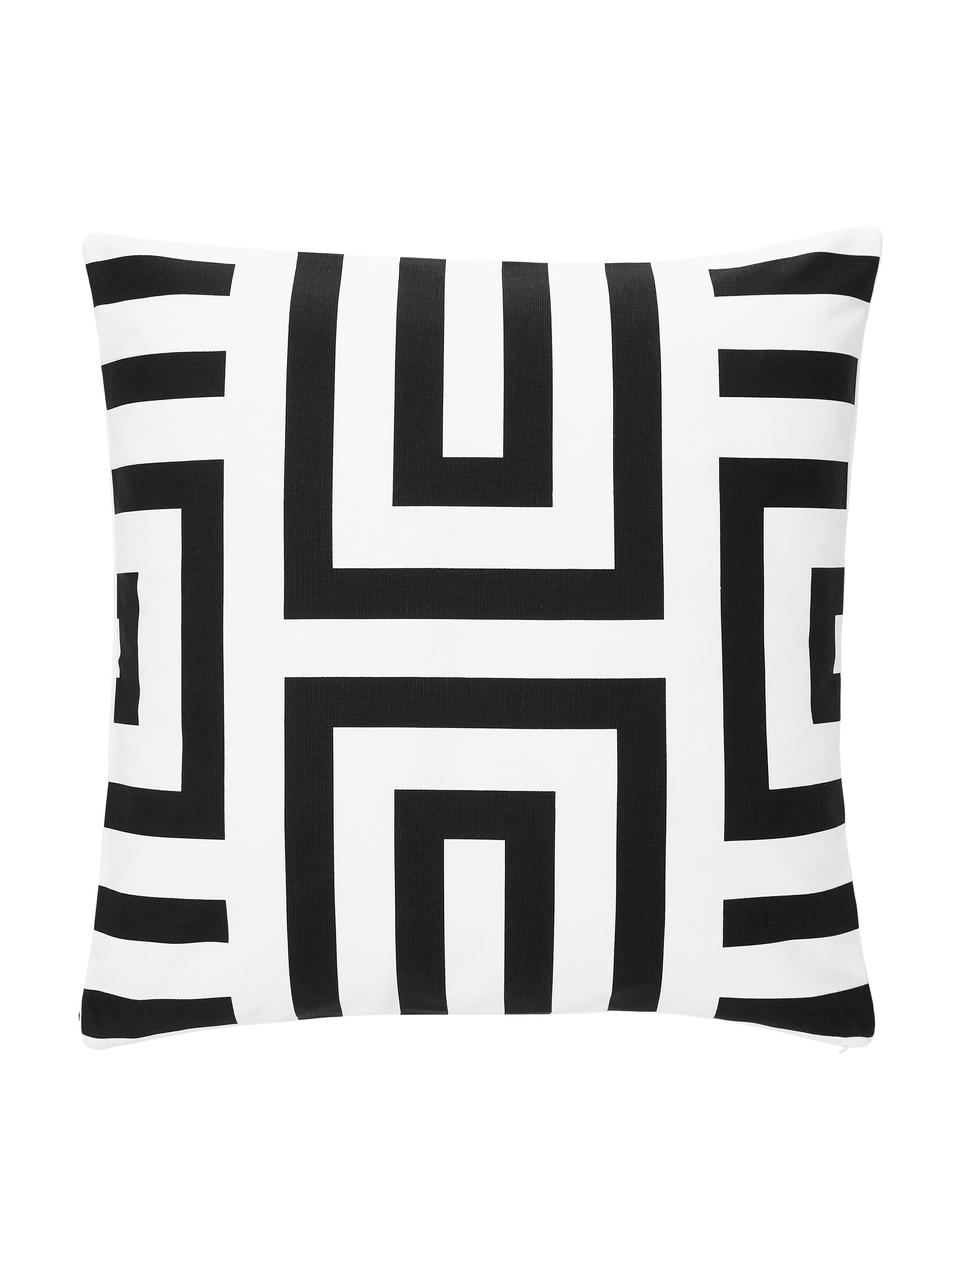 Poszewka na poduszkę z bawełny  Bram, 100% bawełna, Czarny, biały, S 45 x D 45 cm